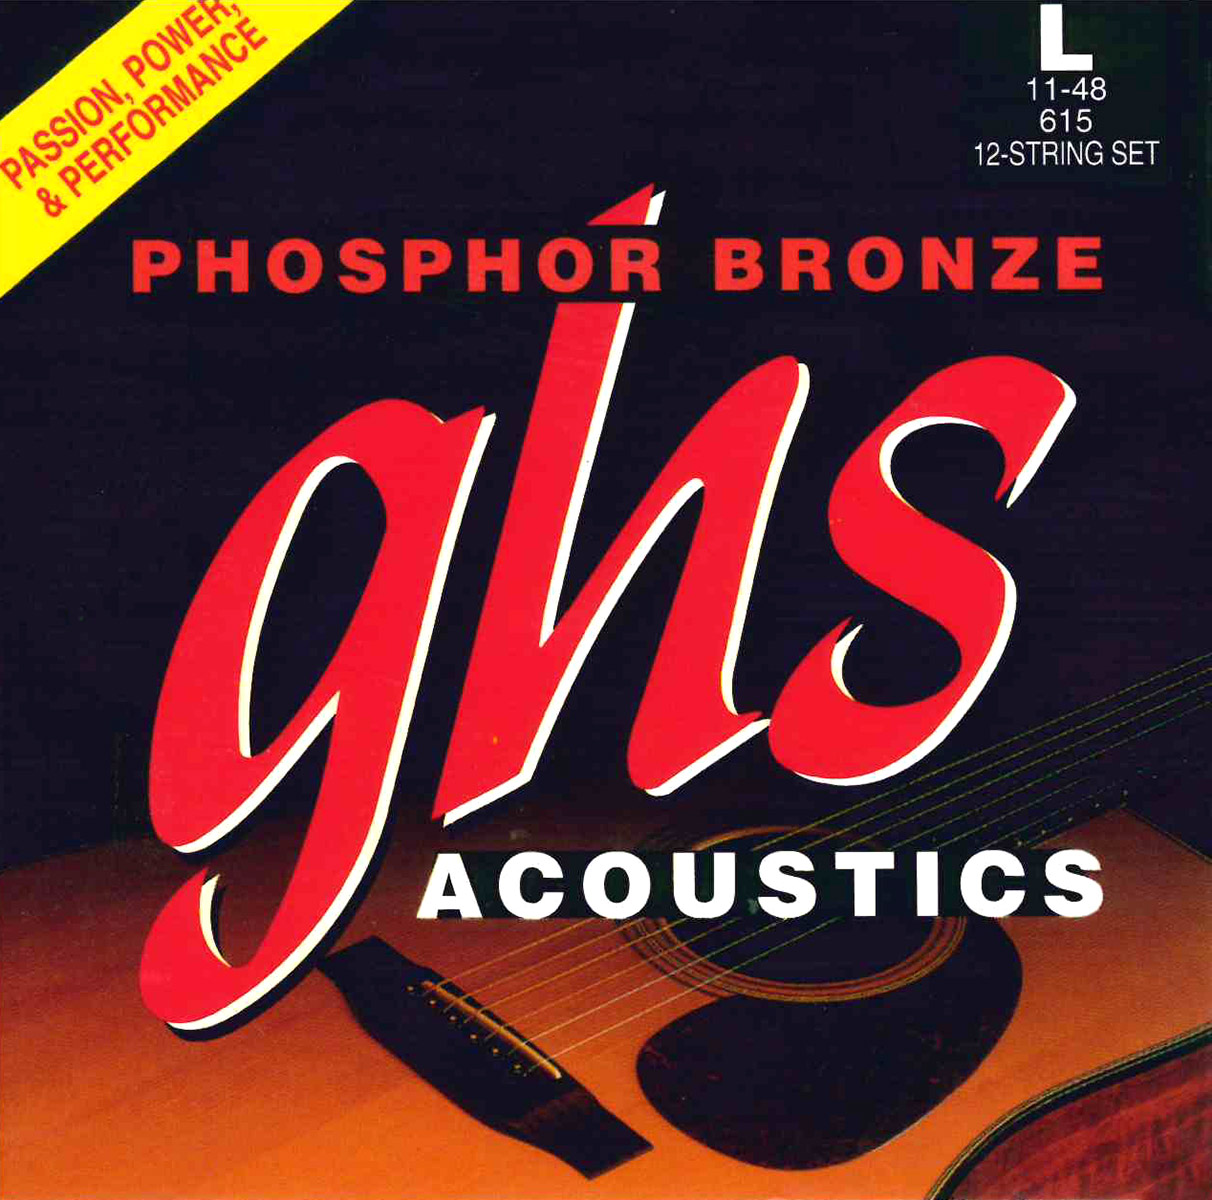 GHS Phosphor Bronze - 615 - Acoustic Guitar String Set, 12 String Light, .011-.048